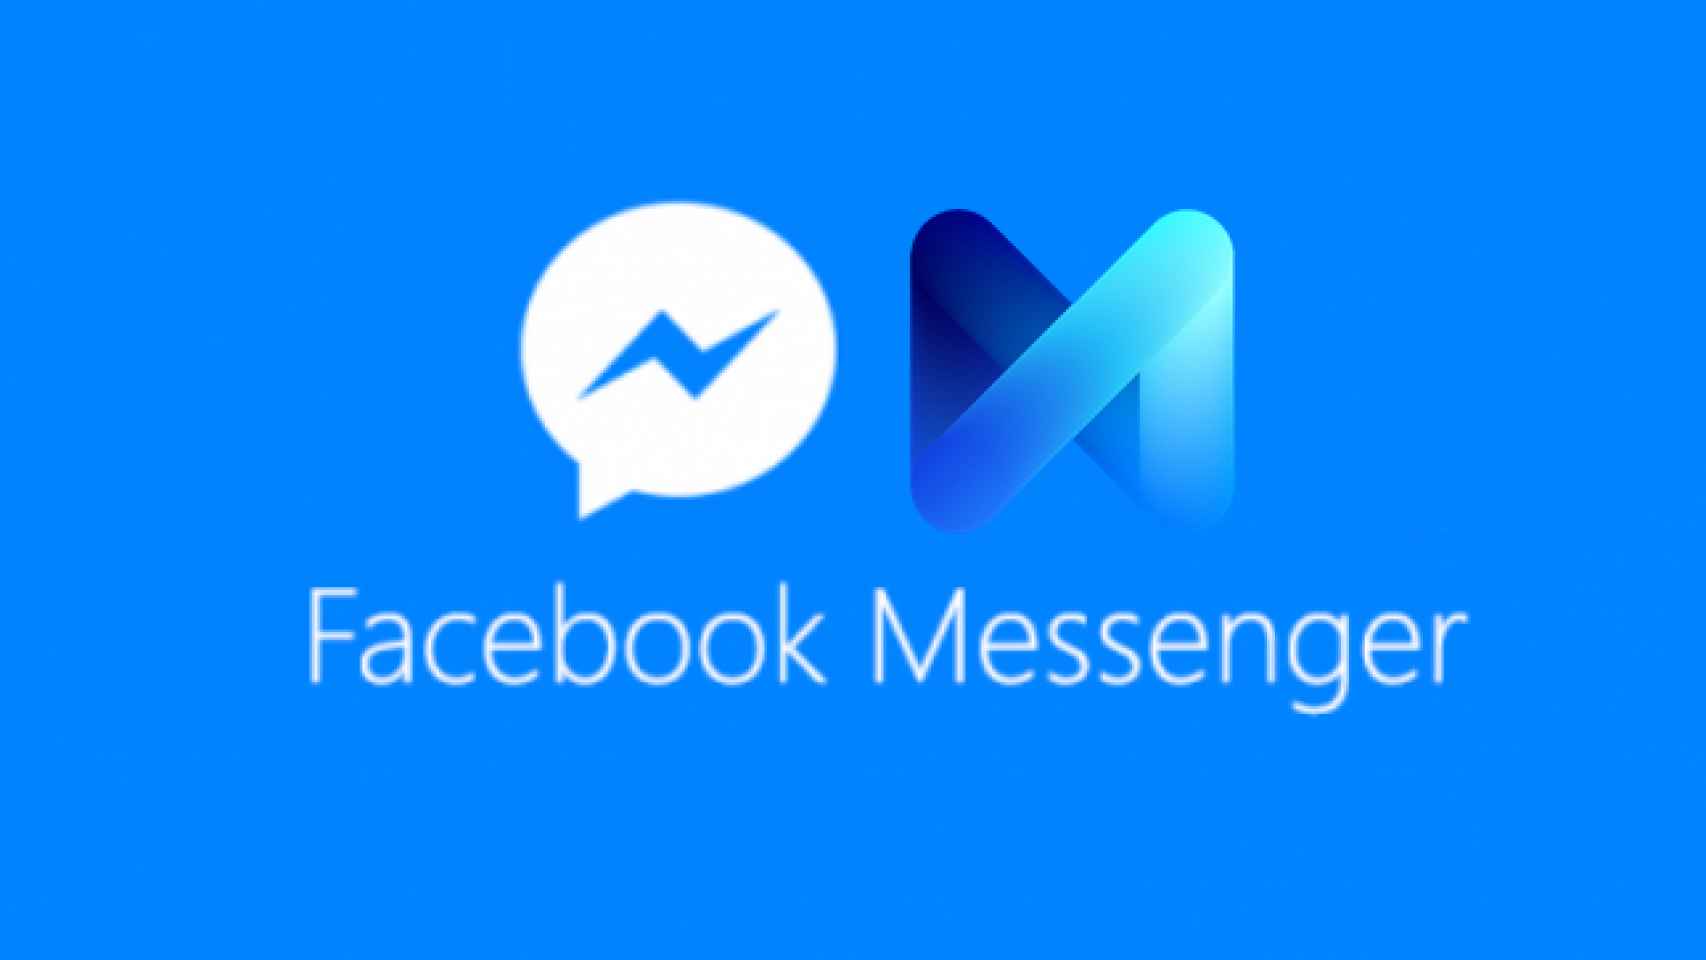 Facebook Messenger tiene mensajes ocultos. Cómo leerlos